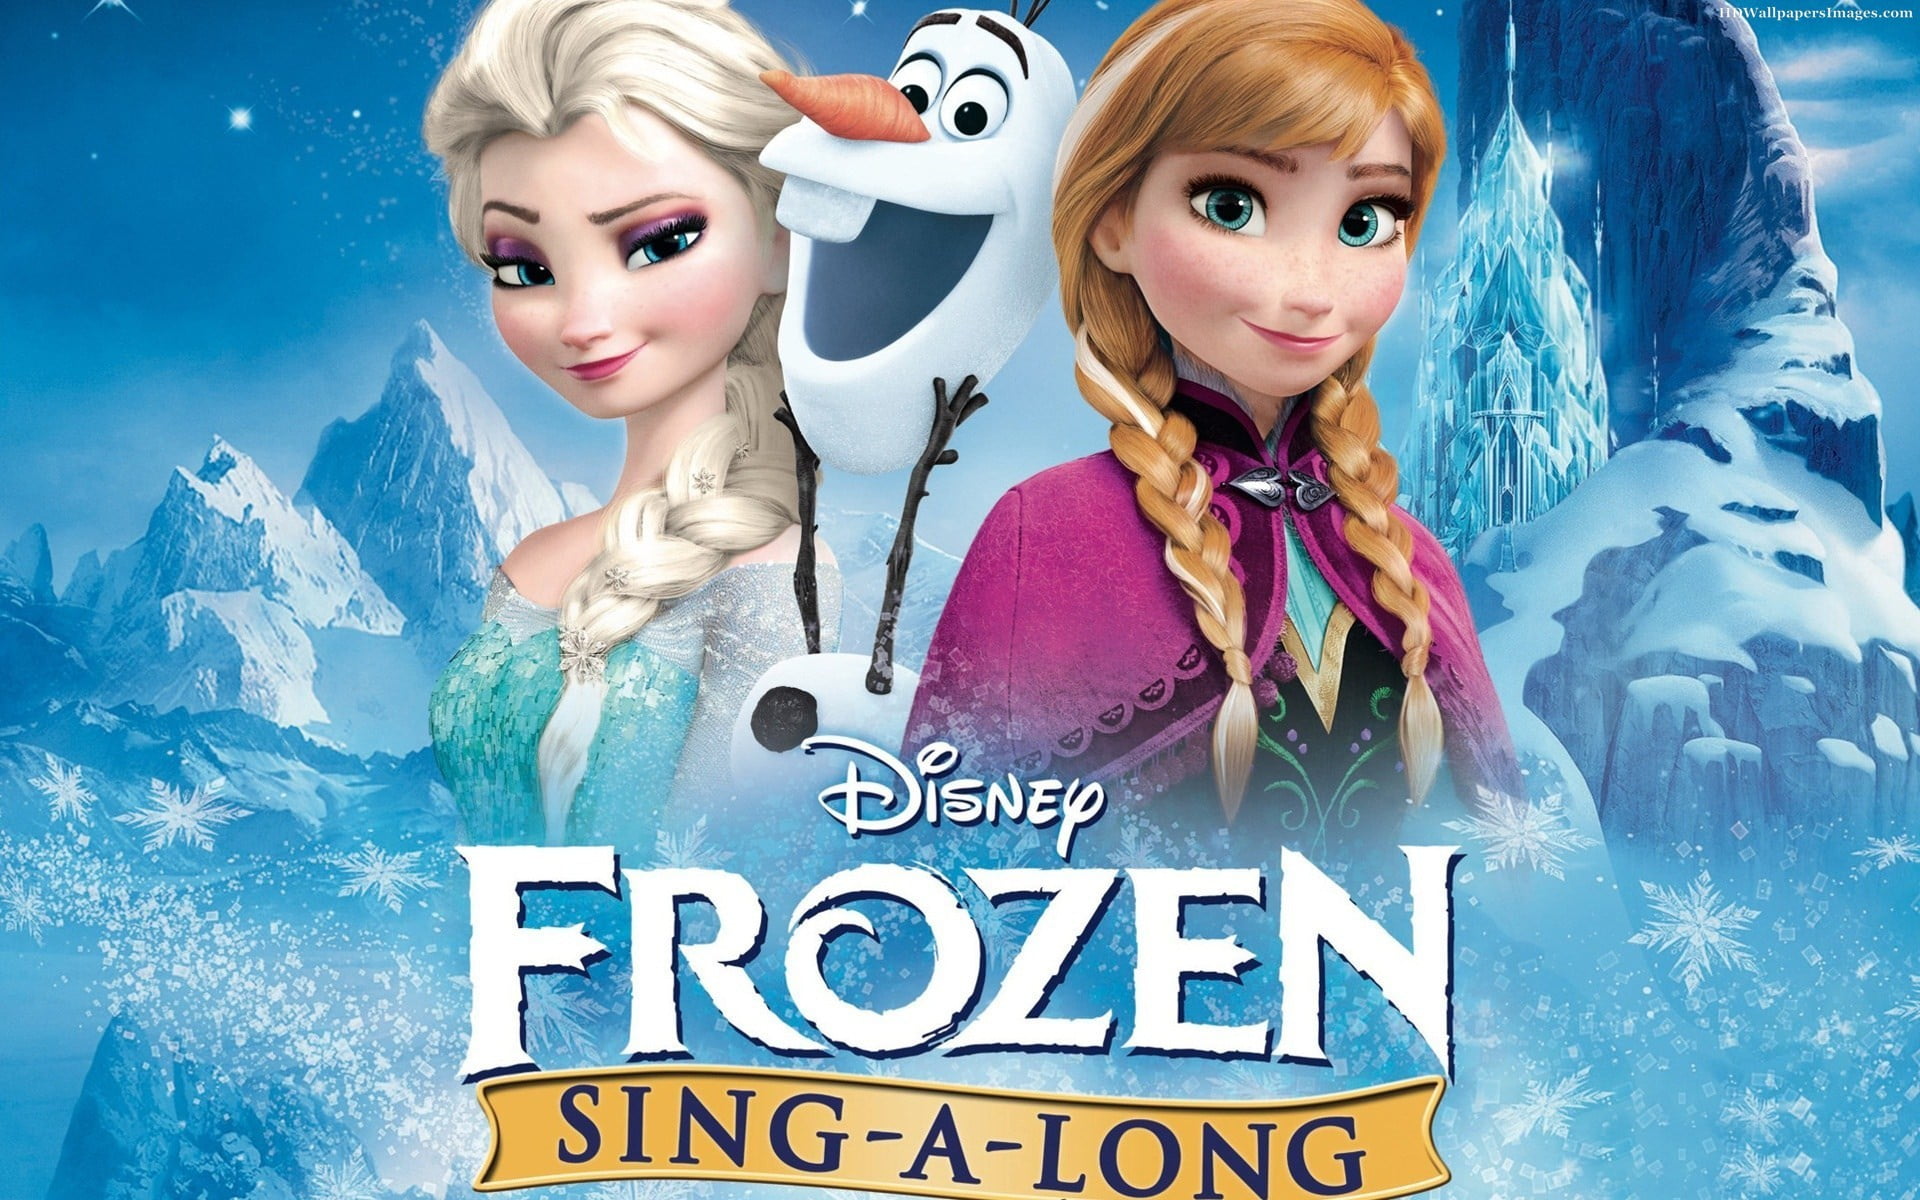 Disney Frozen Elsa And Anna Wallpaper Frozen Movie Olaf Princess Anna Princess Elsa Hd Wallpaper Wallpaper Flare